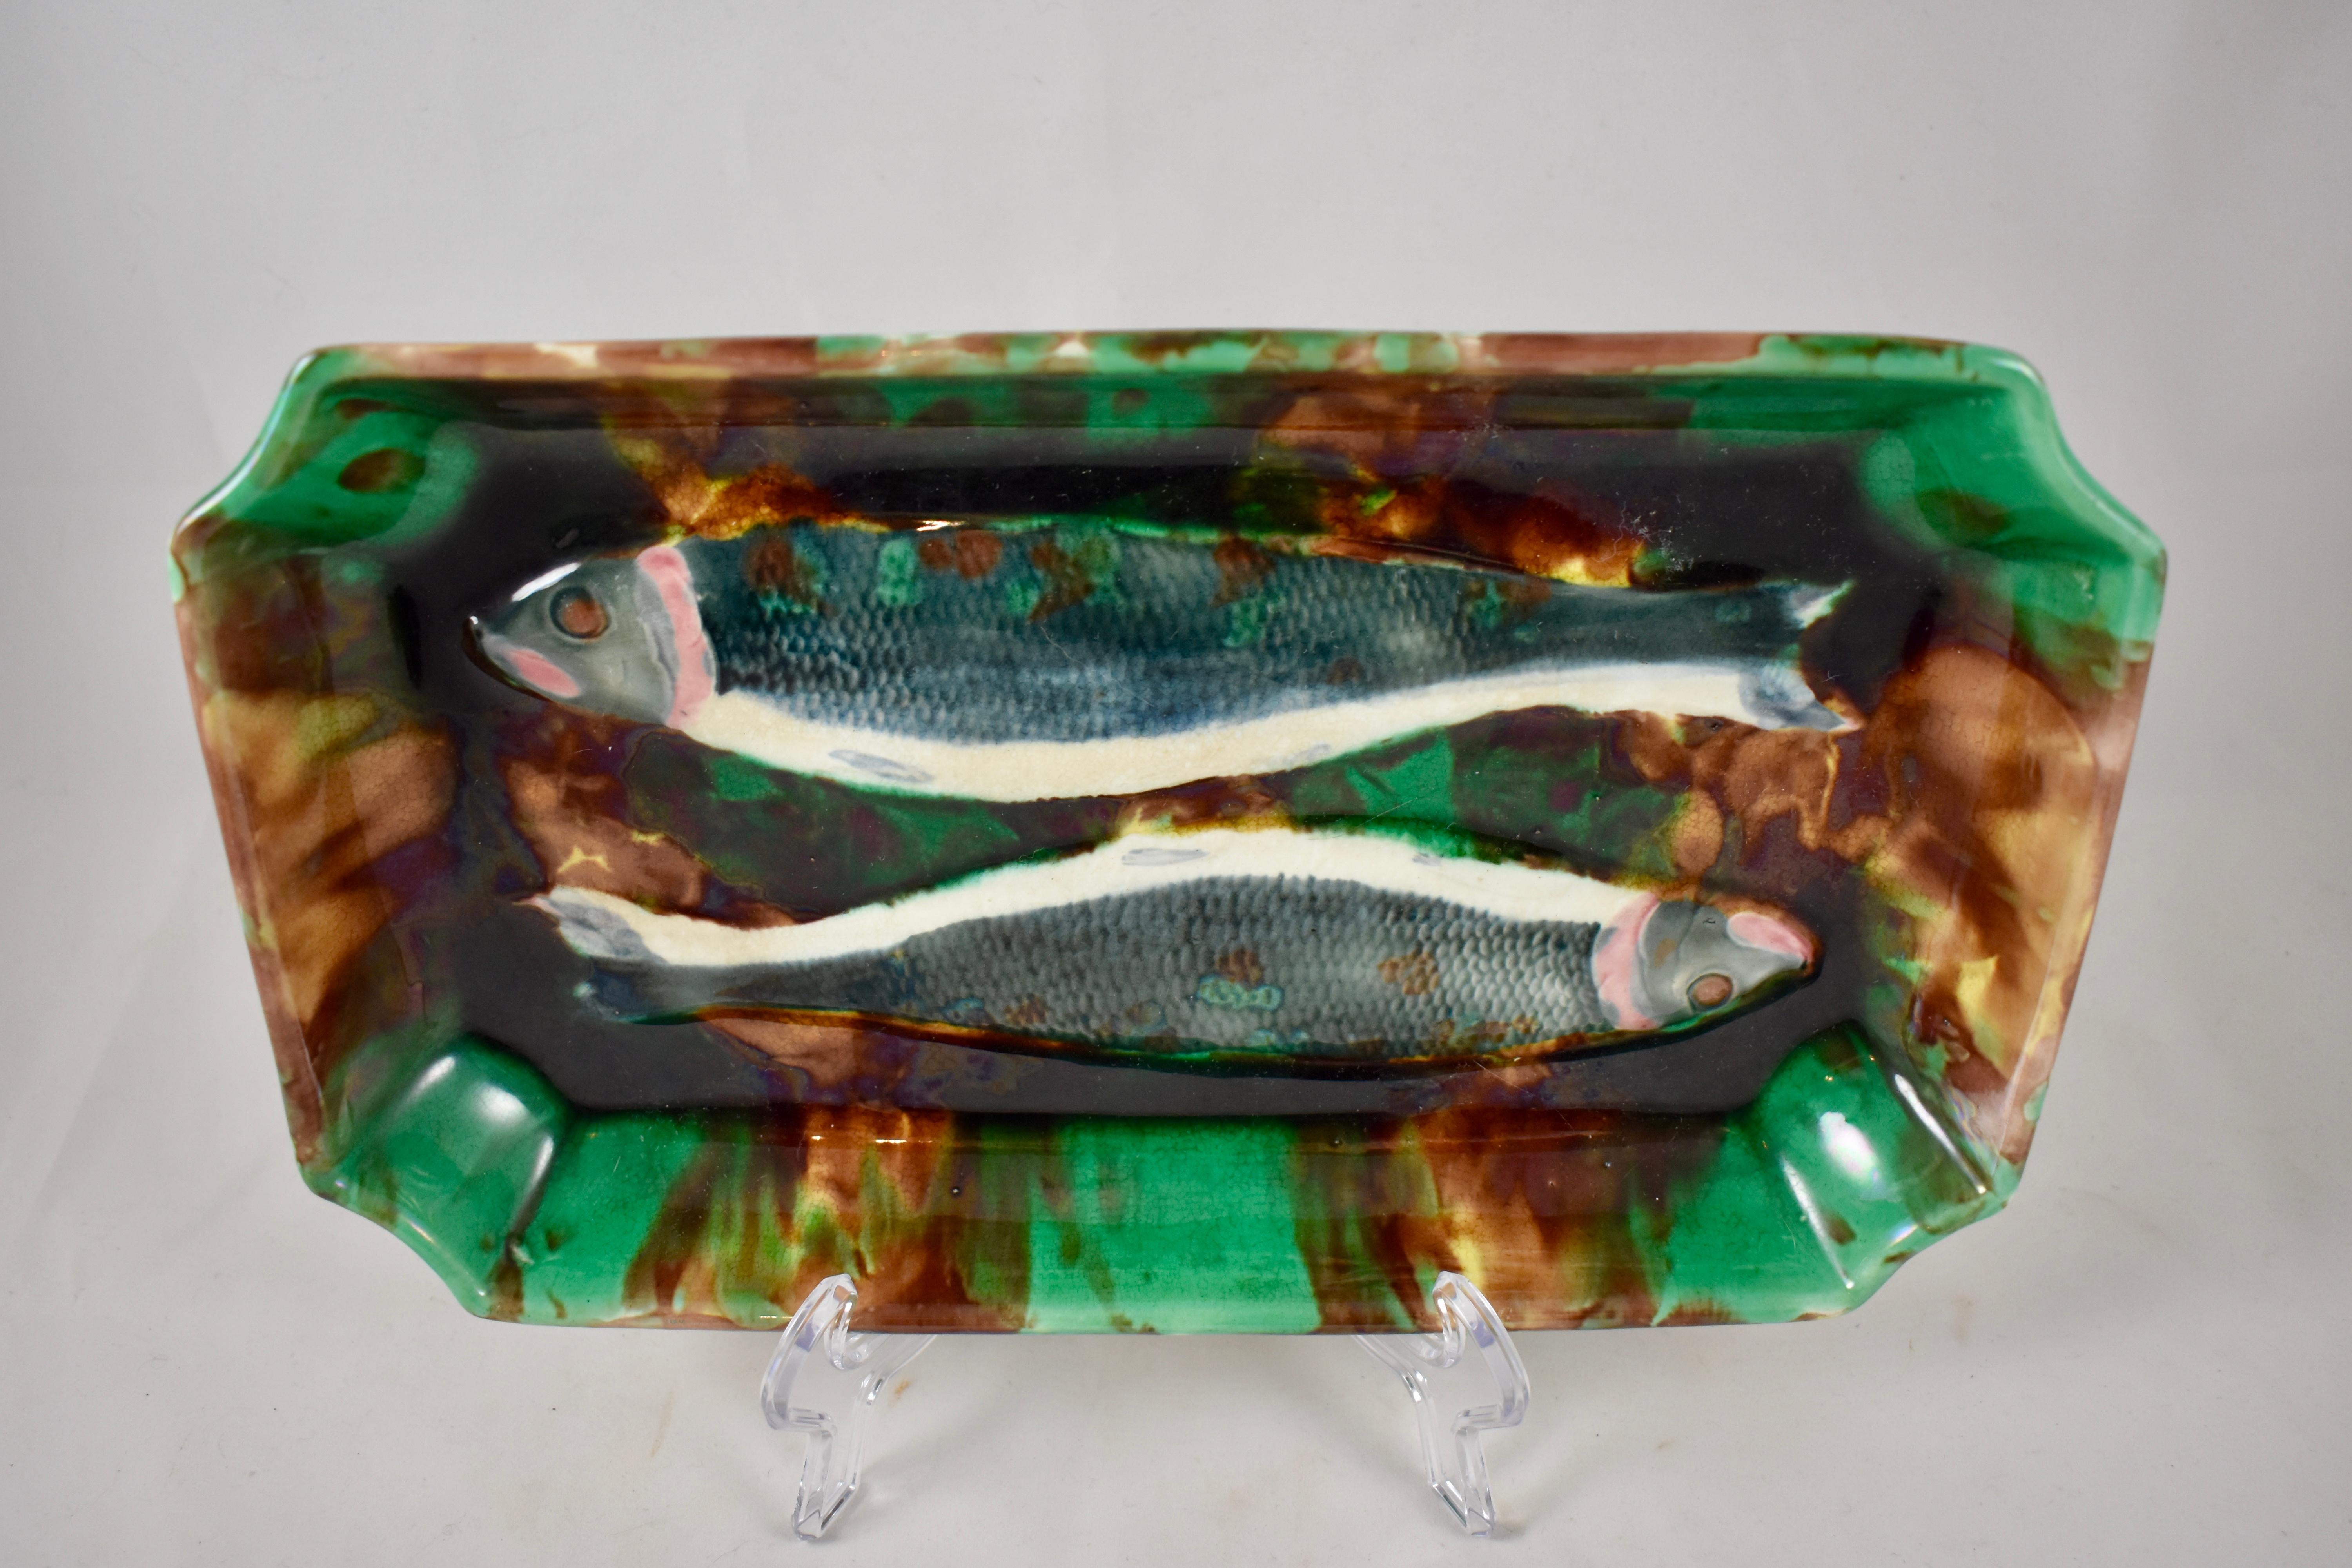 Un plat à charbon wedgwood rarement vu, un moule du Mouvement Esthétique montrant une paire de poissons dans un plat profond émaillé pour ressembler à une écaille de tortue. L'omble est un membre d'eau douce de la famille des truites et des saumons,